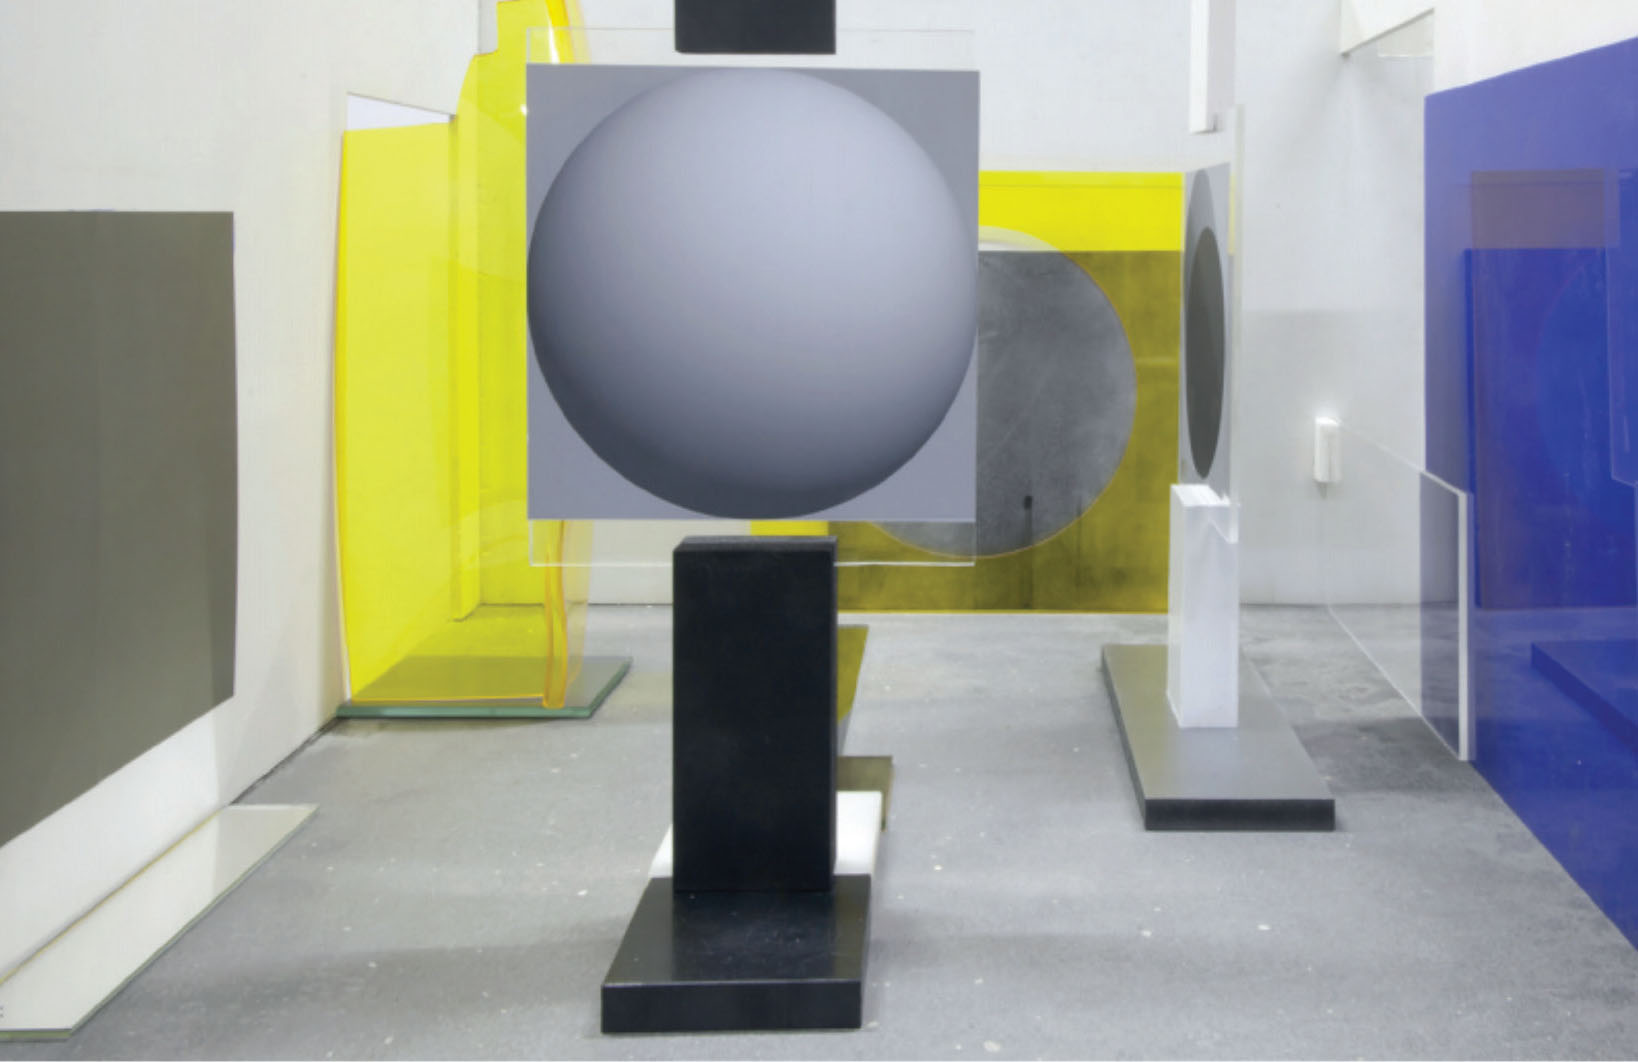 刘韡,《无题》, 2015年, 镜子，木头，钢，塑料，玻璃，颜料, 尺寸可变